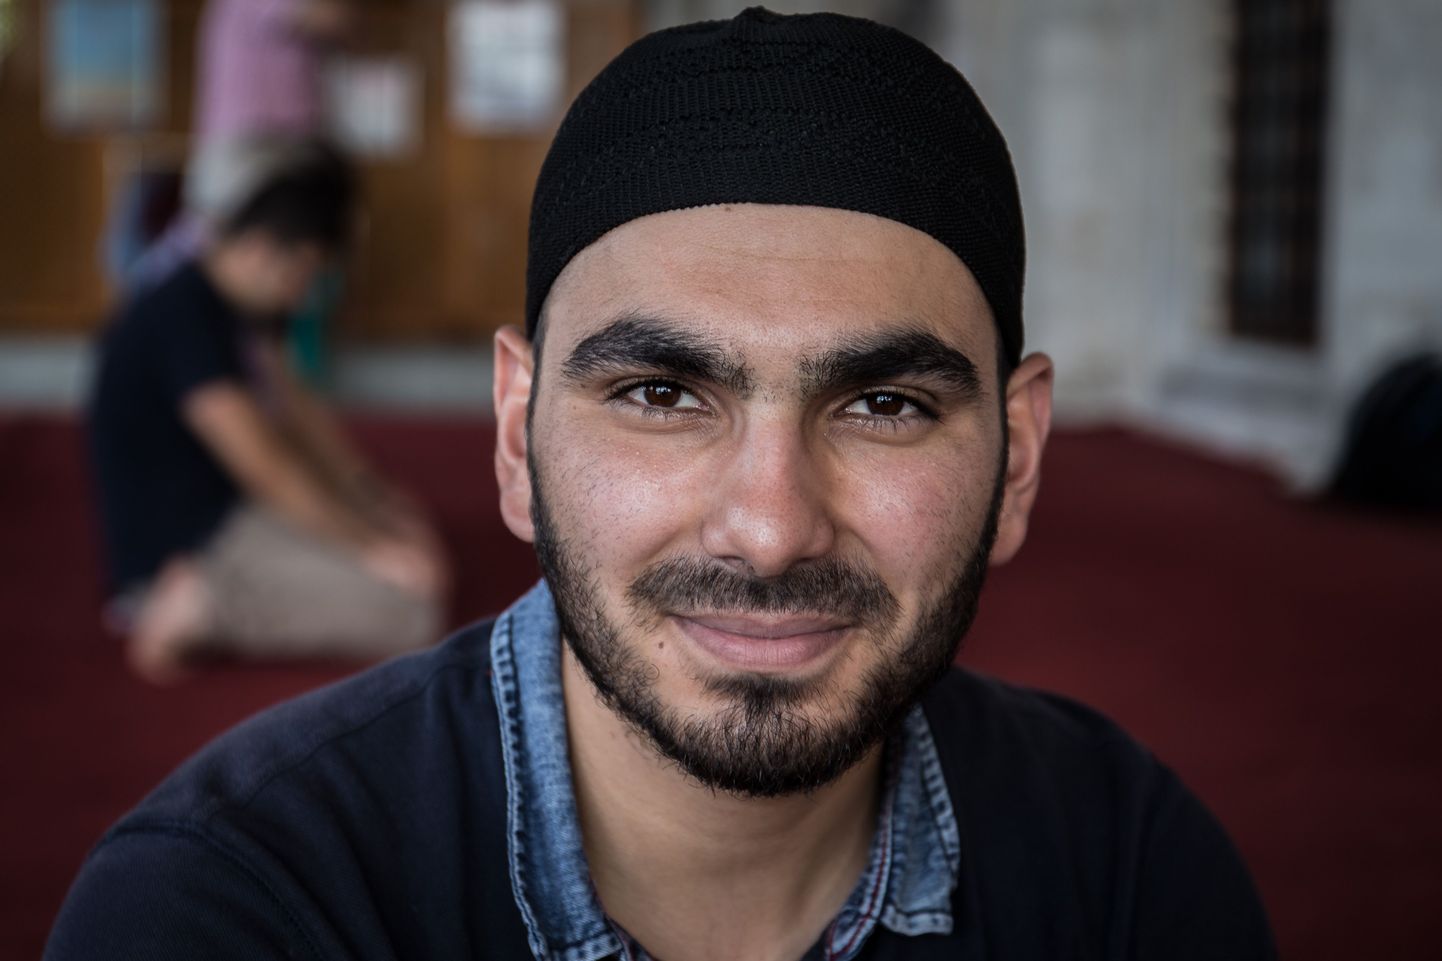 Islamiõiguse tudeng Ebuzer Kılıç mošees Istanbulis.